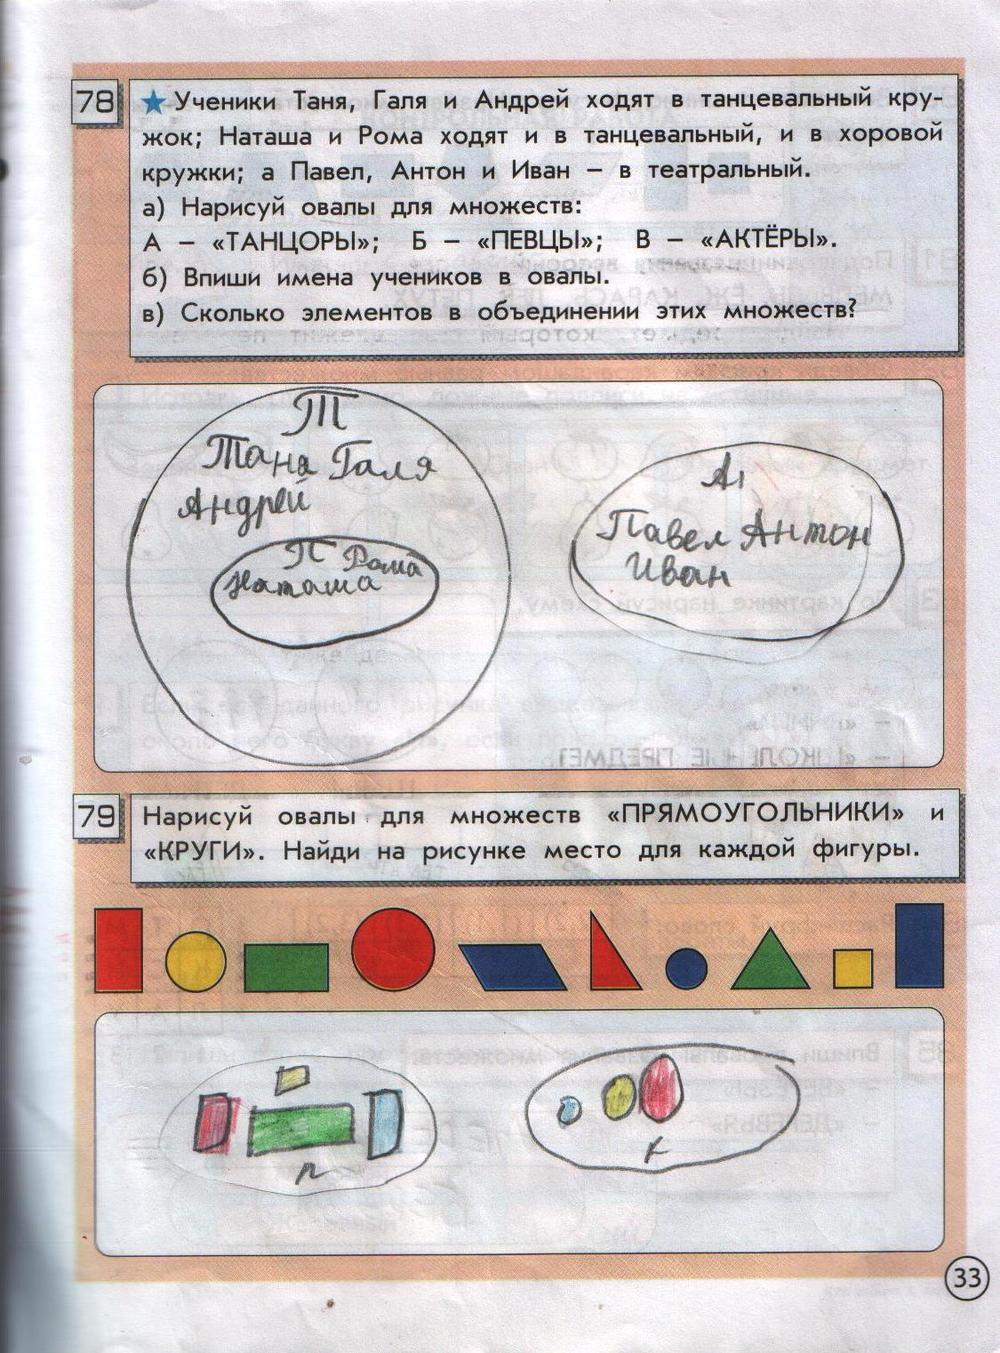 ГДЗ Информатика 2 класс часть 2 страница 33 Горячев, Горина